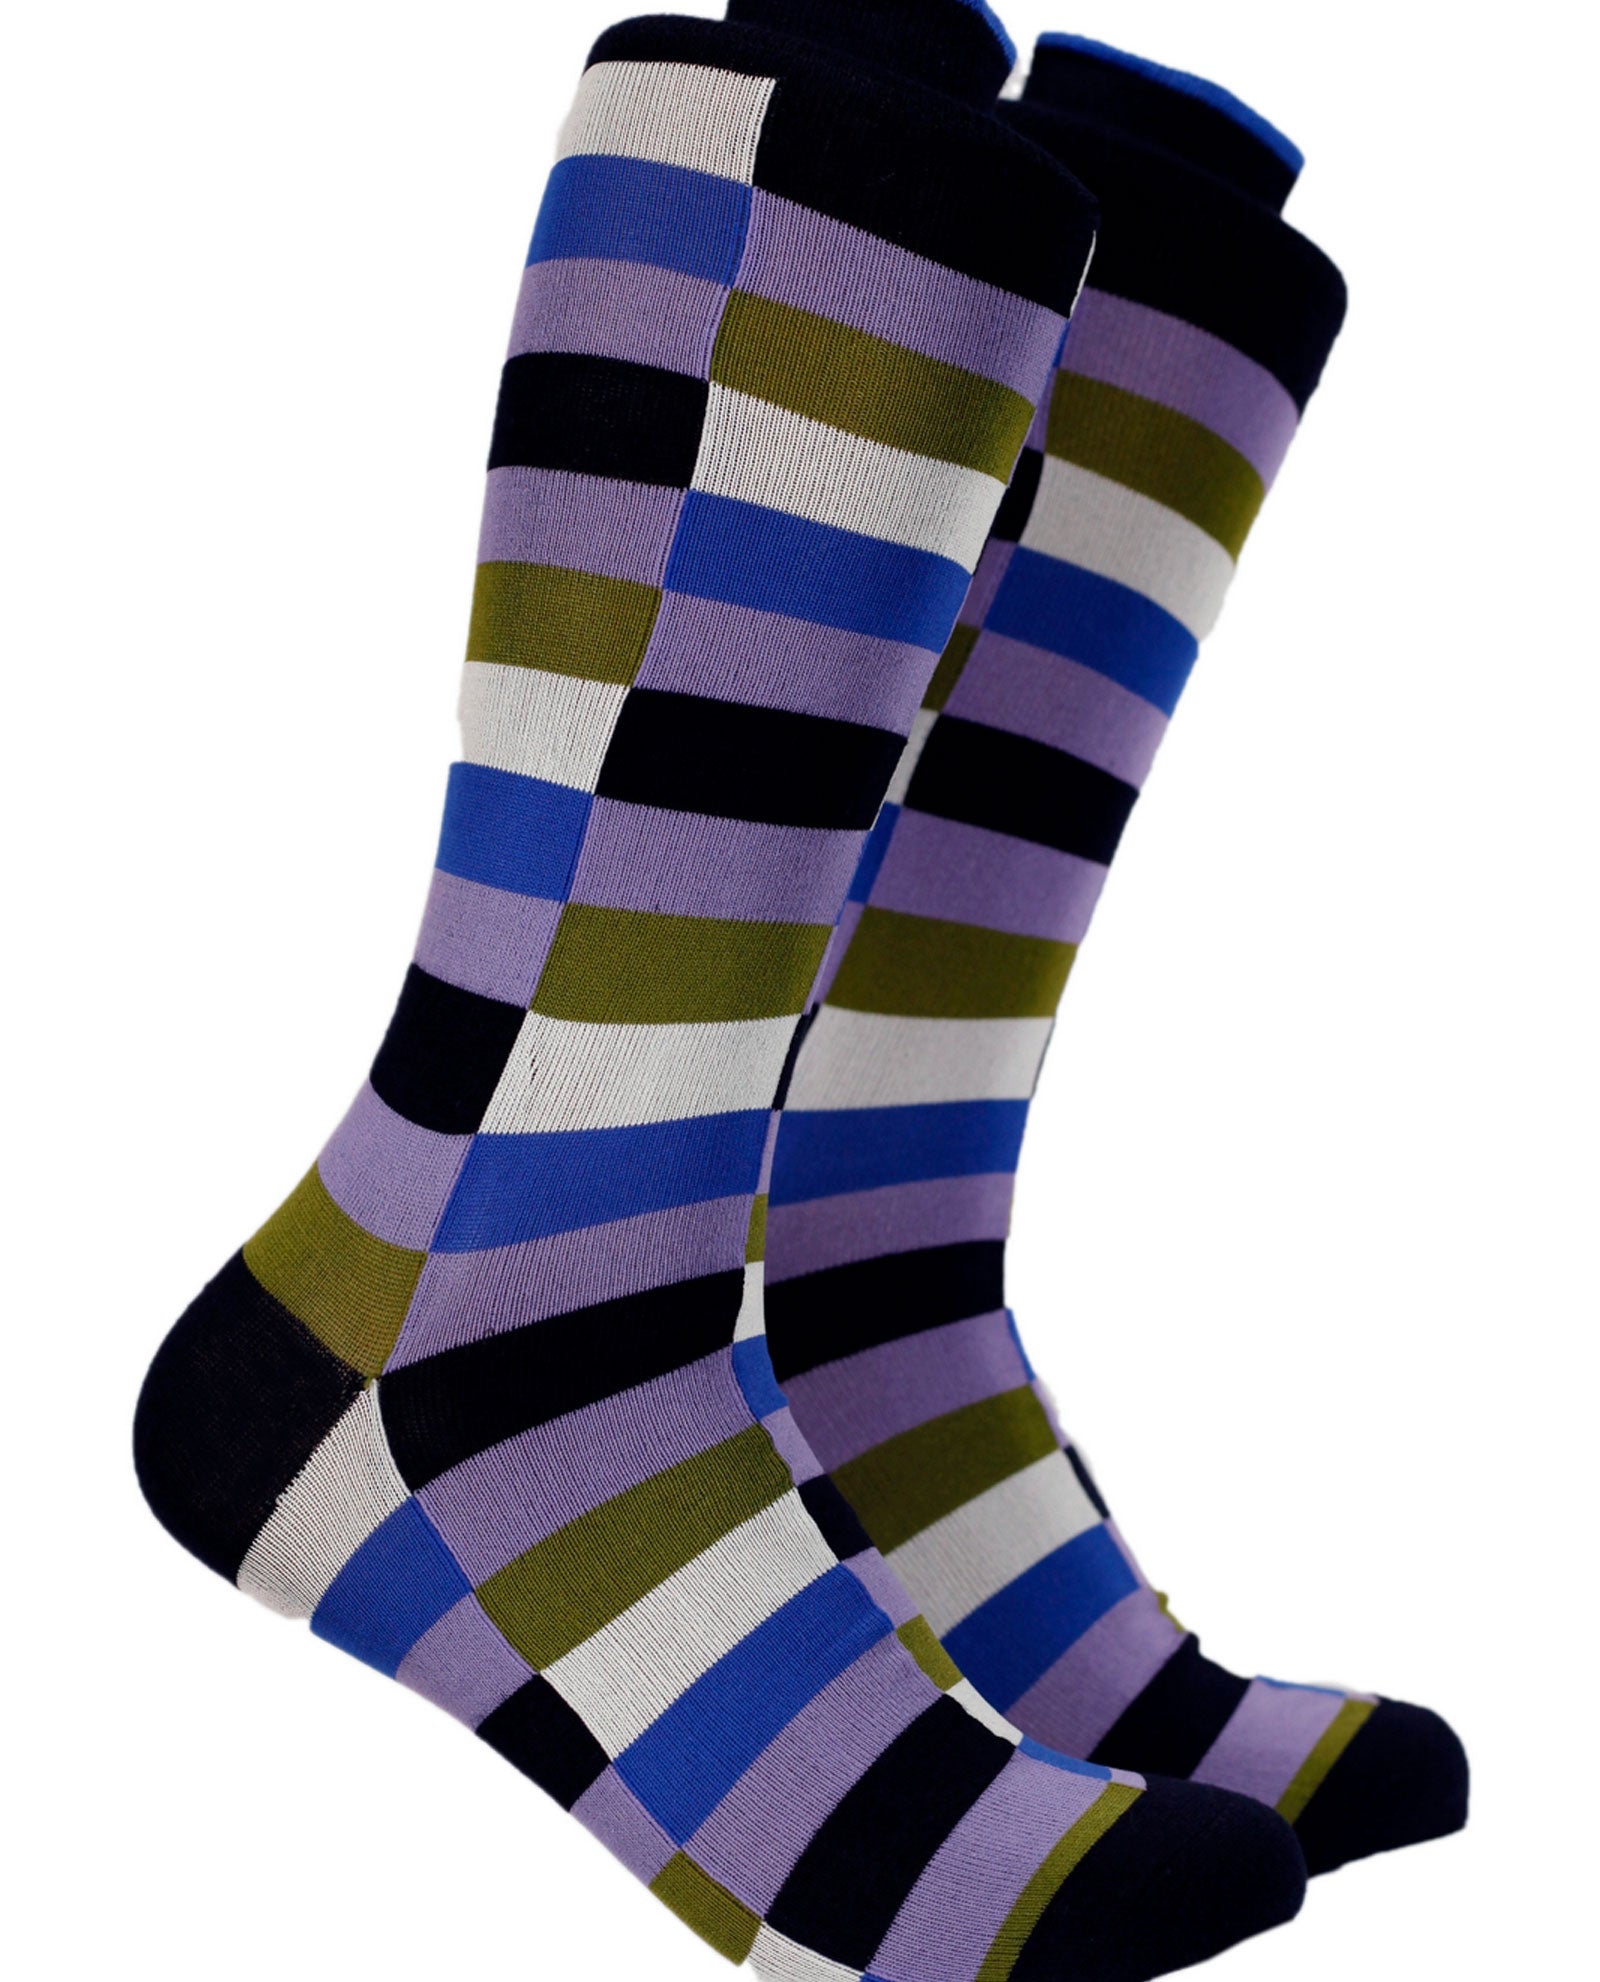 The Vertigo Sock